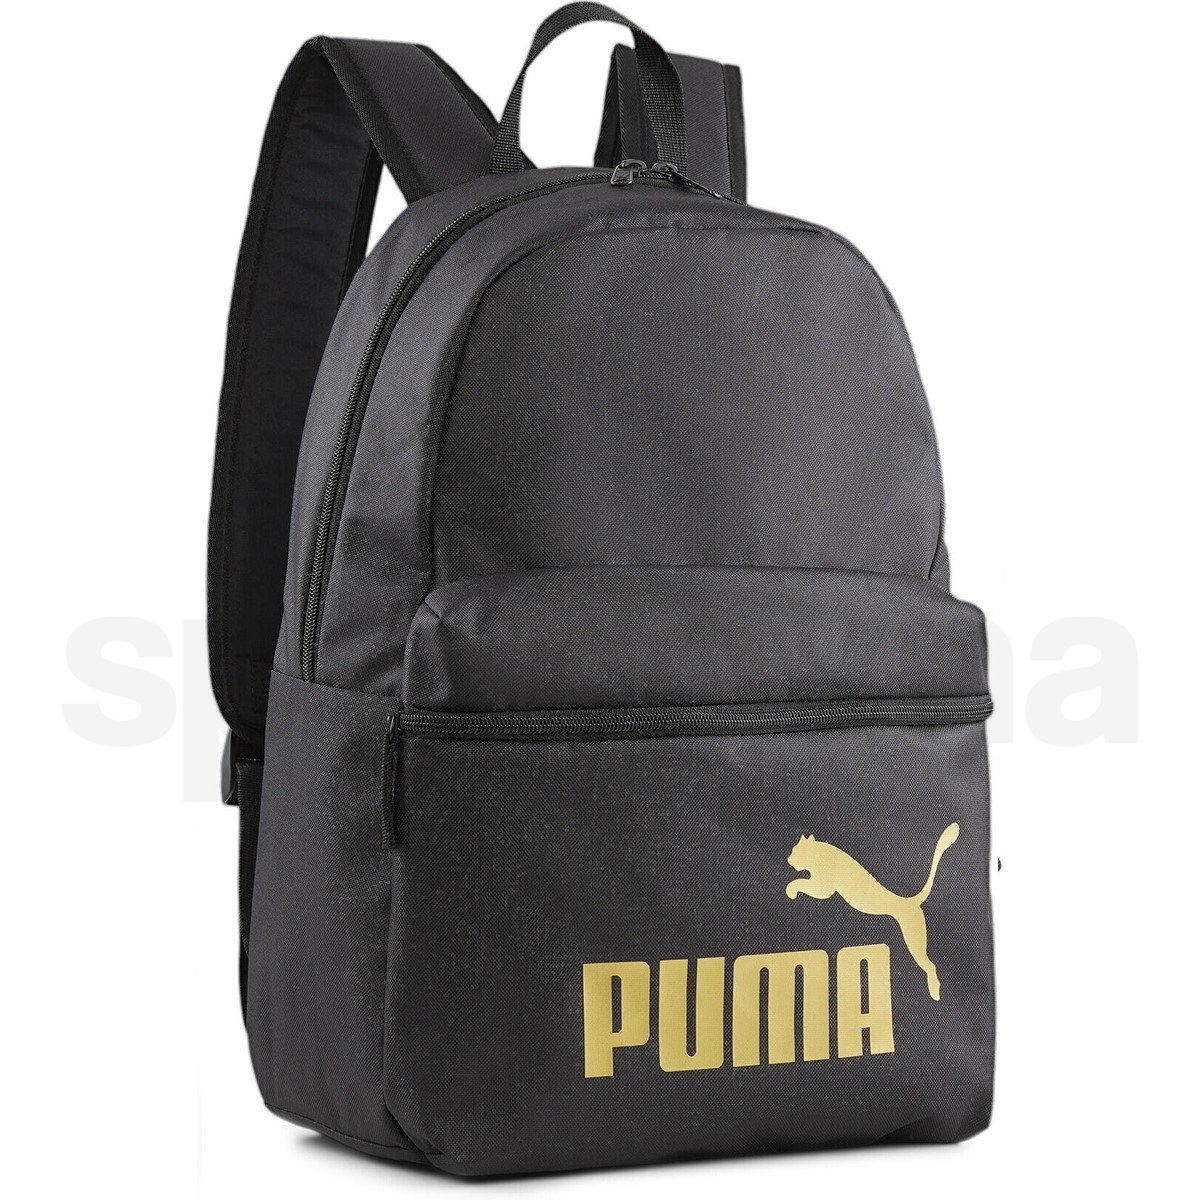 Batoh Puma Phase Backpack - černá/zlatá